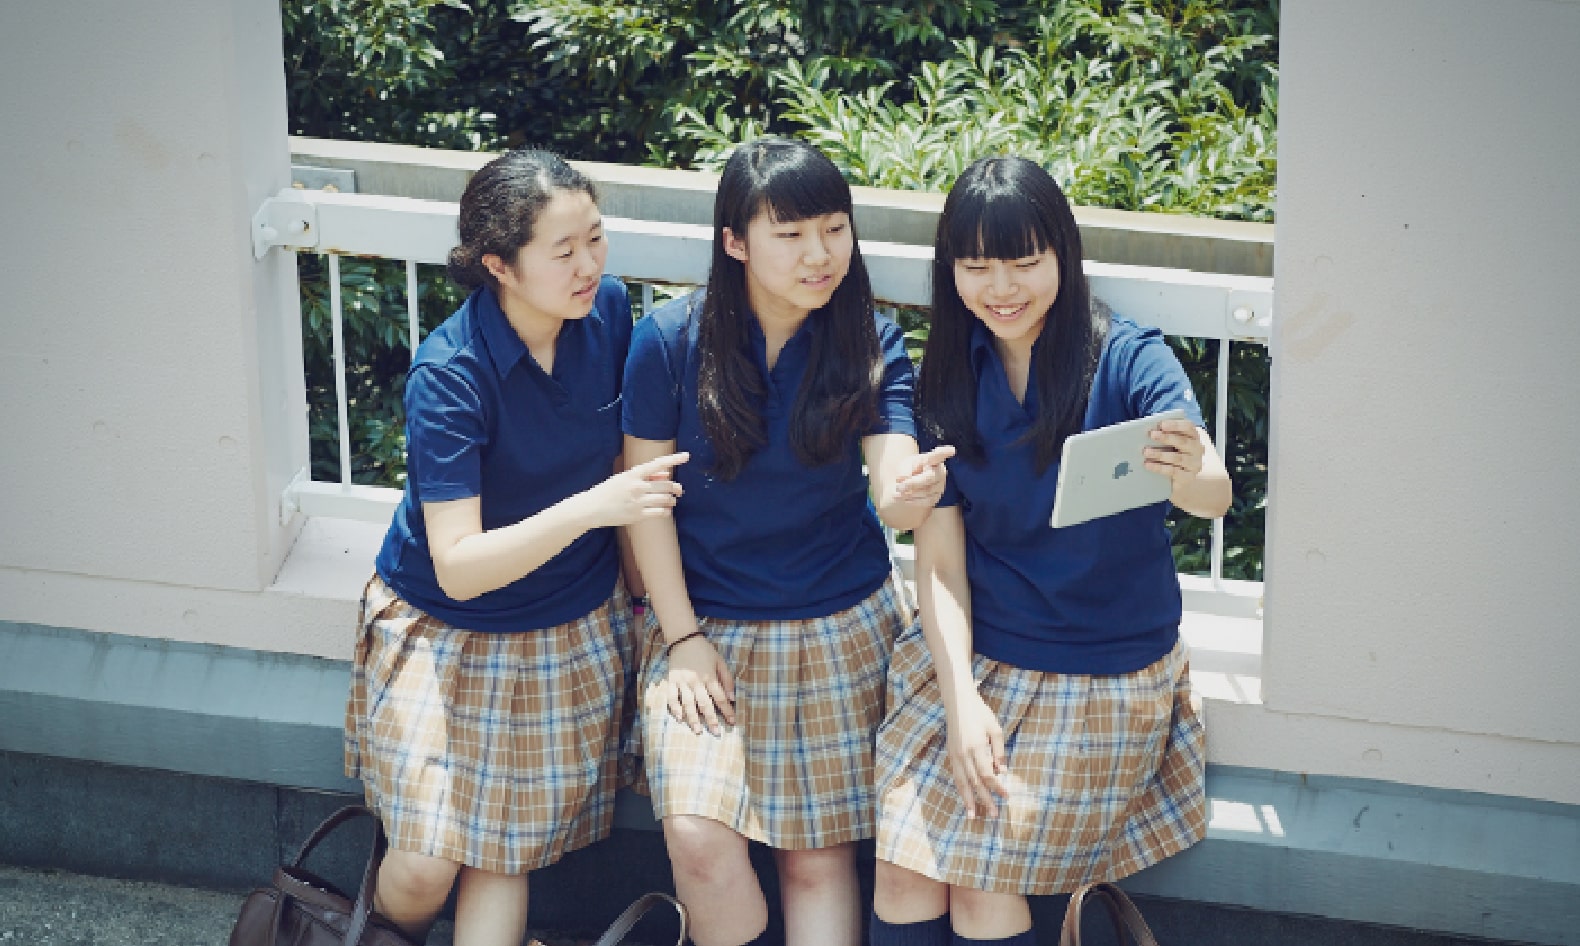 タブレットを指さしながら会話している3人の女子生徒の写真